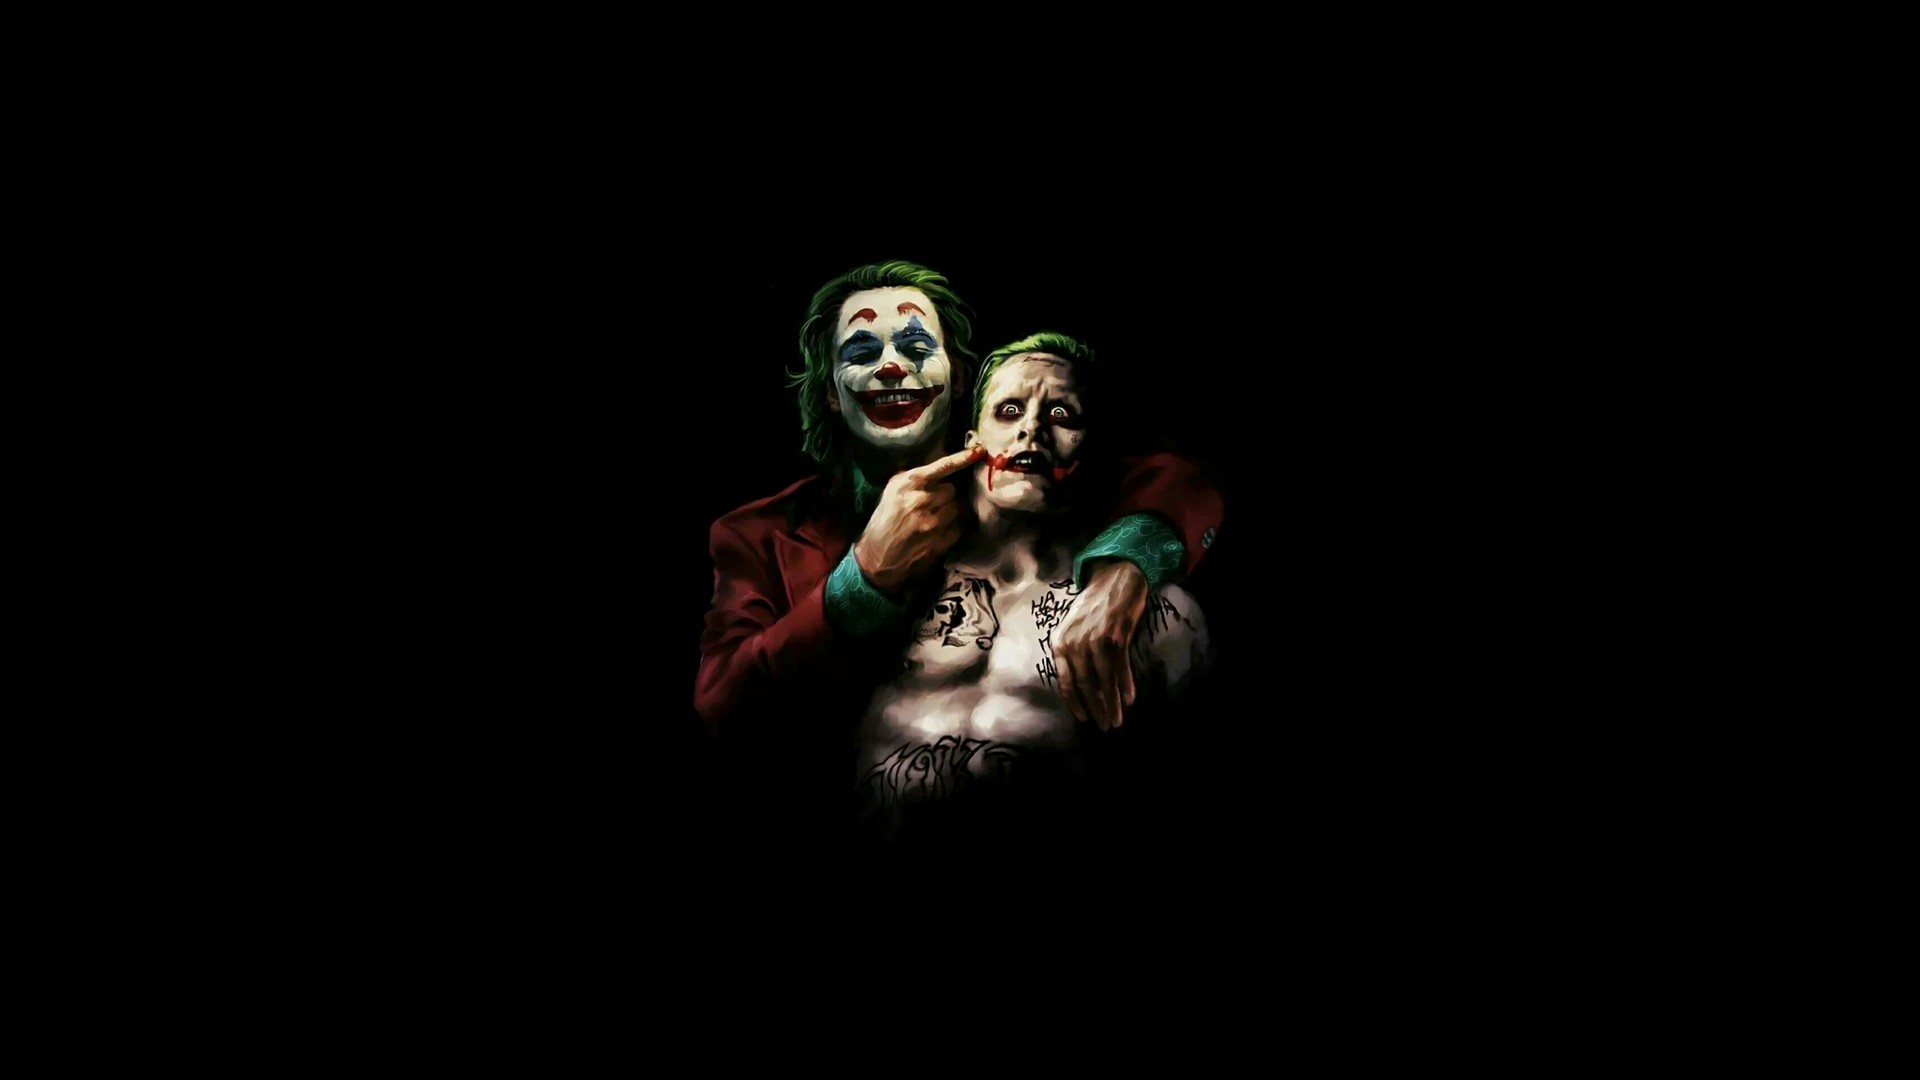 Joker 2019 Full Movie Wallpaper   2022 Movie Poster Wallpaper HD 1920x1080